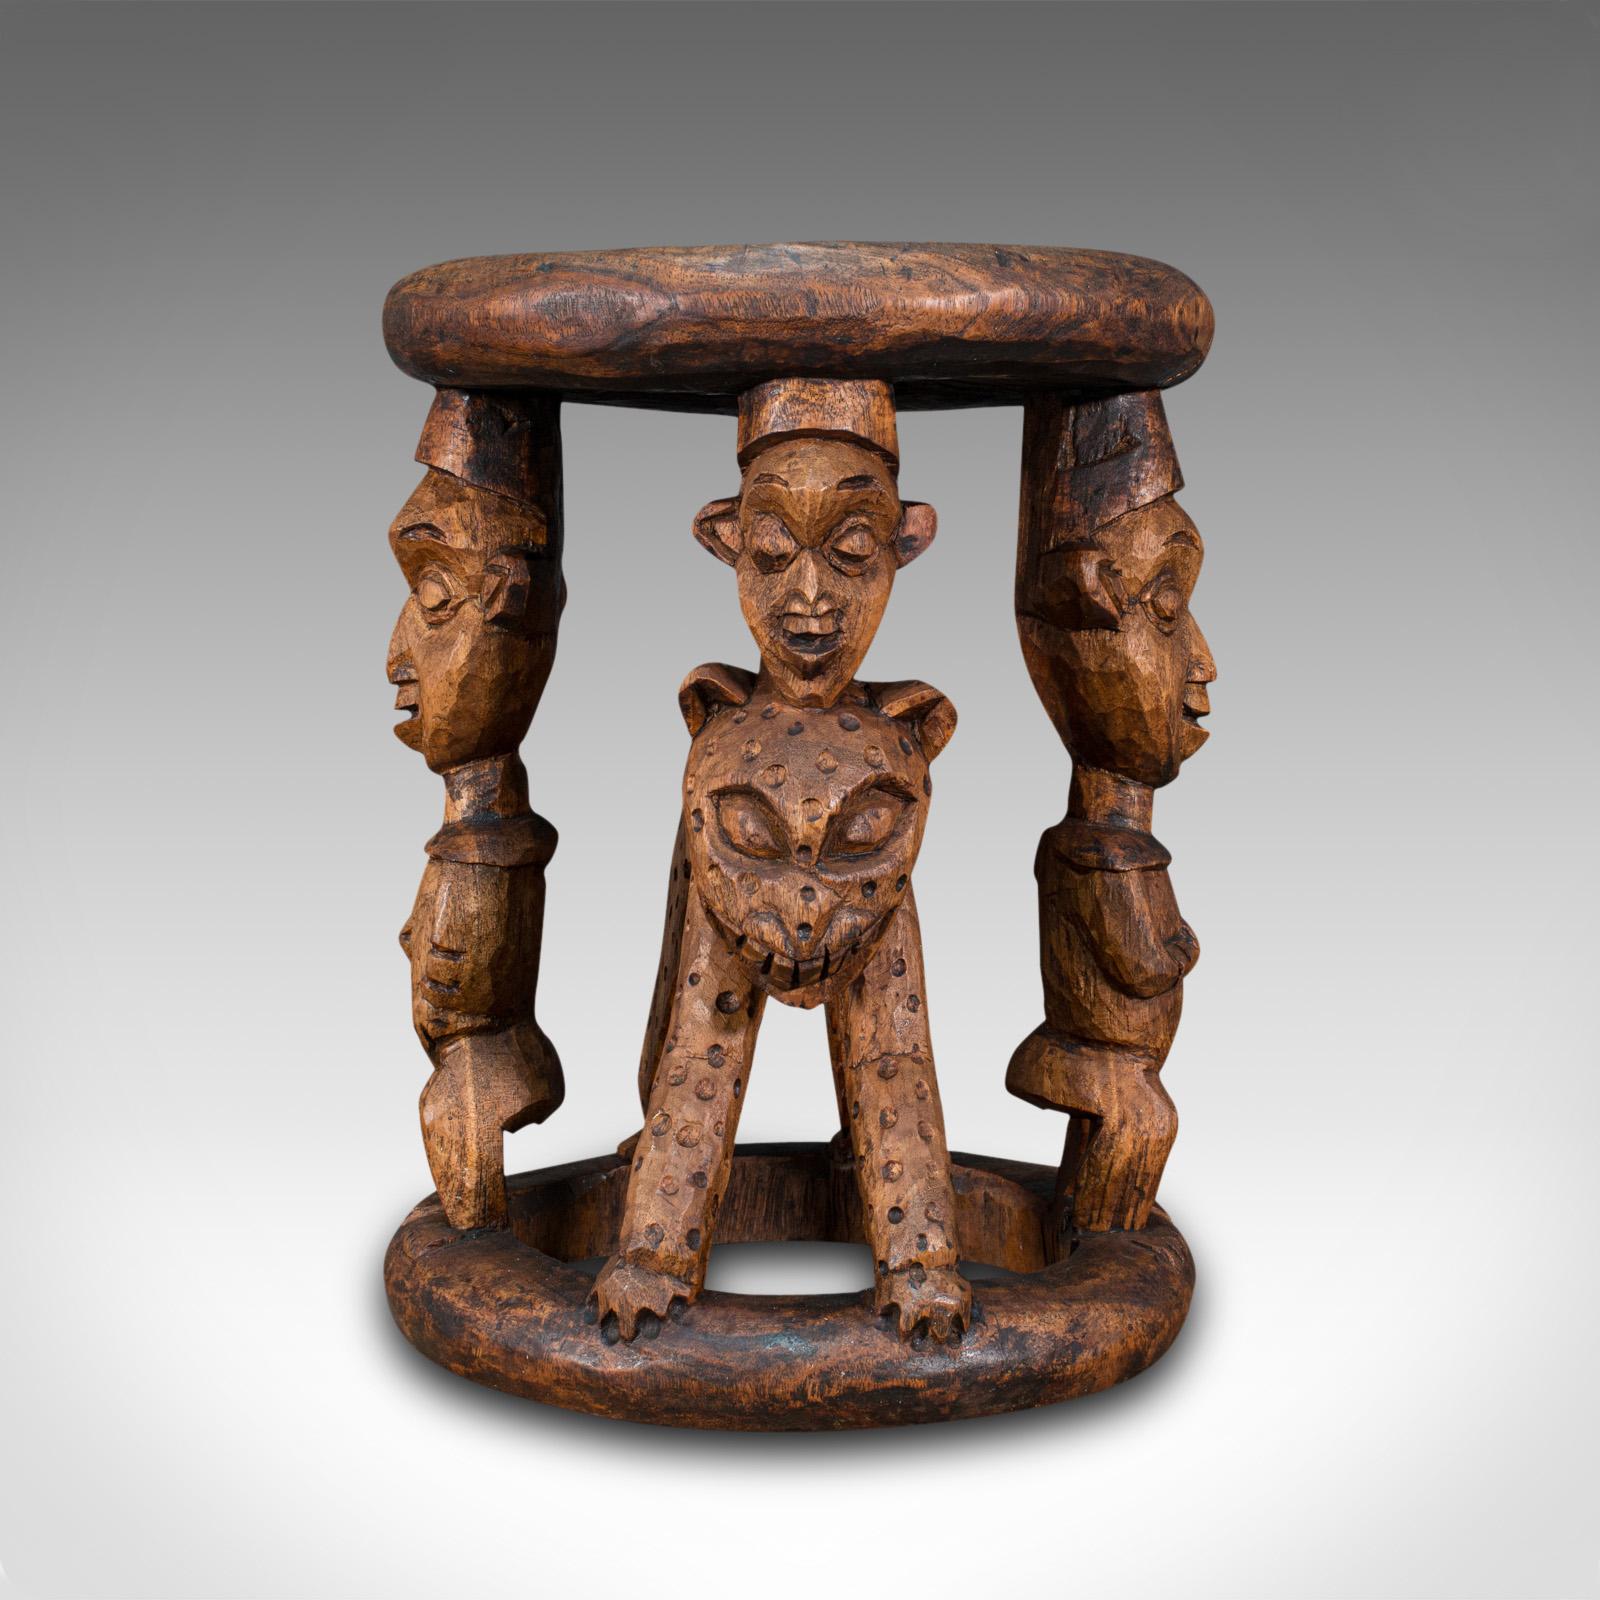 Dies ist ein antiker Yoruba-Häuptlingshocker. Eine westafrikanische Zeremoniallampe oder ein Beistelltisch aus Hartholz aus dem Königreich Benin, aus dem späten 19. Jahrhundert, um 1900.

Auffallendes Beispiel westafrikanischer Stammeskunst
Zeigt